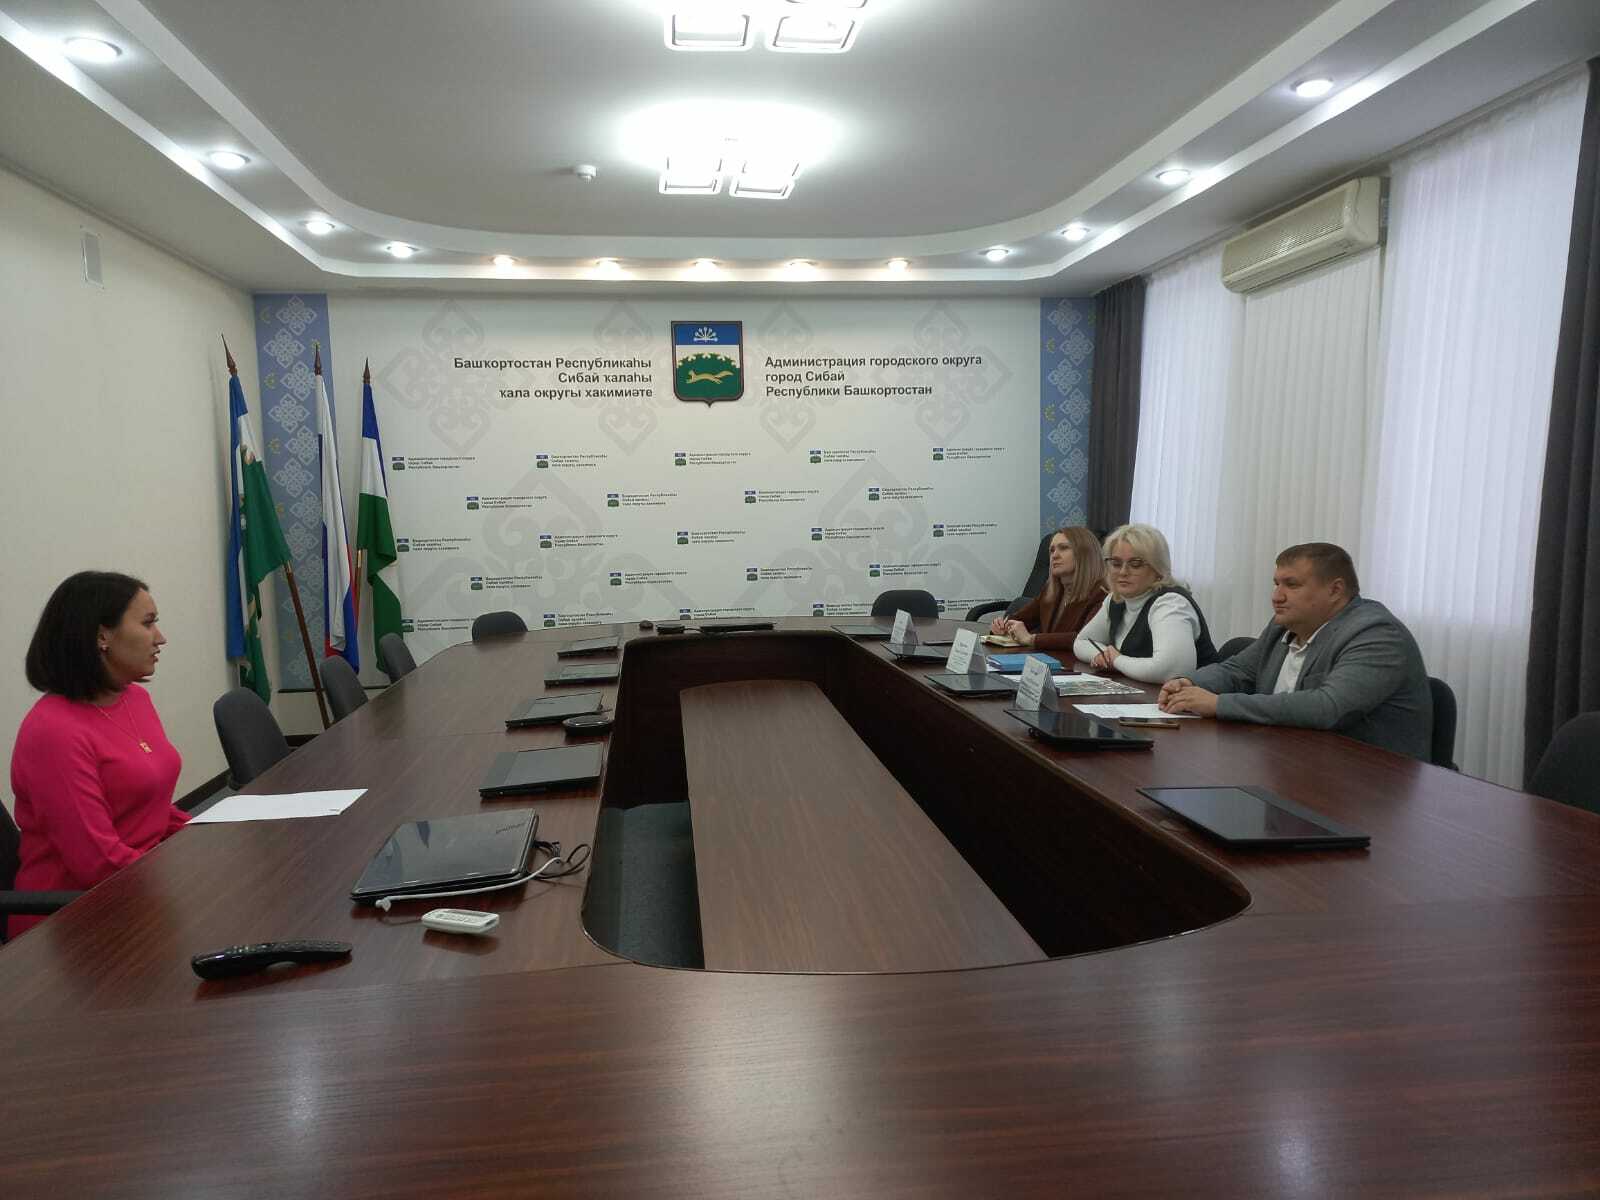 В Республике Башкортостан запущен новый проект по защите прав и интересов бизнеса - Единый день приема предпринимателей